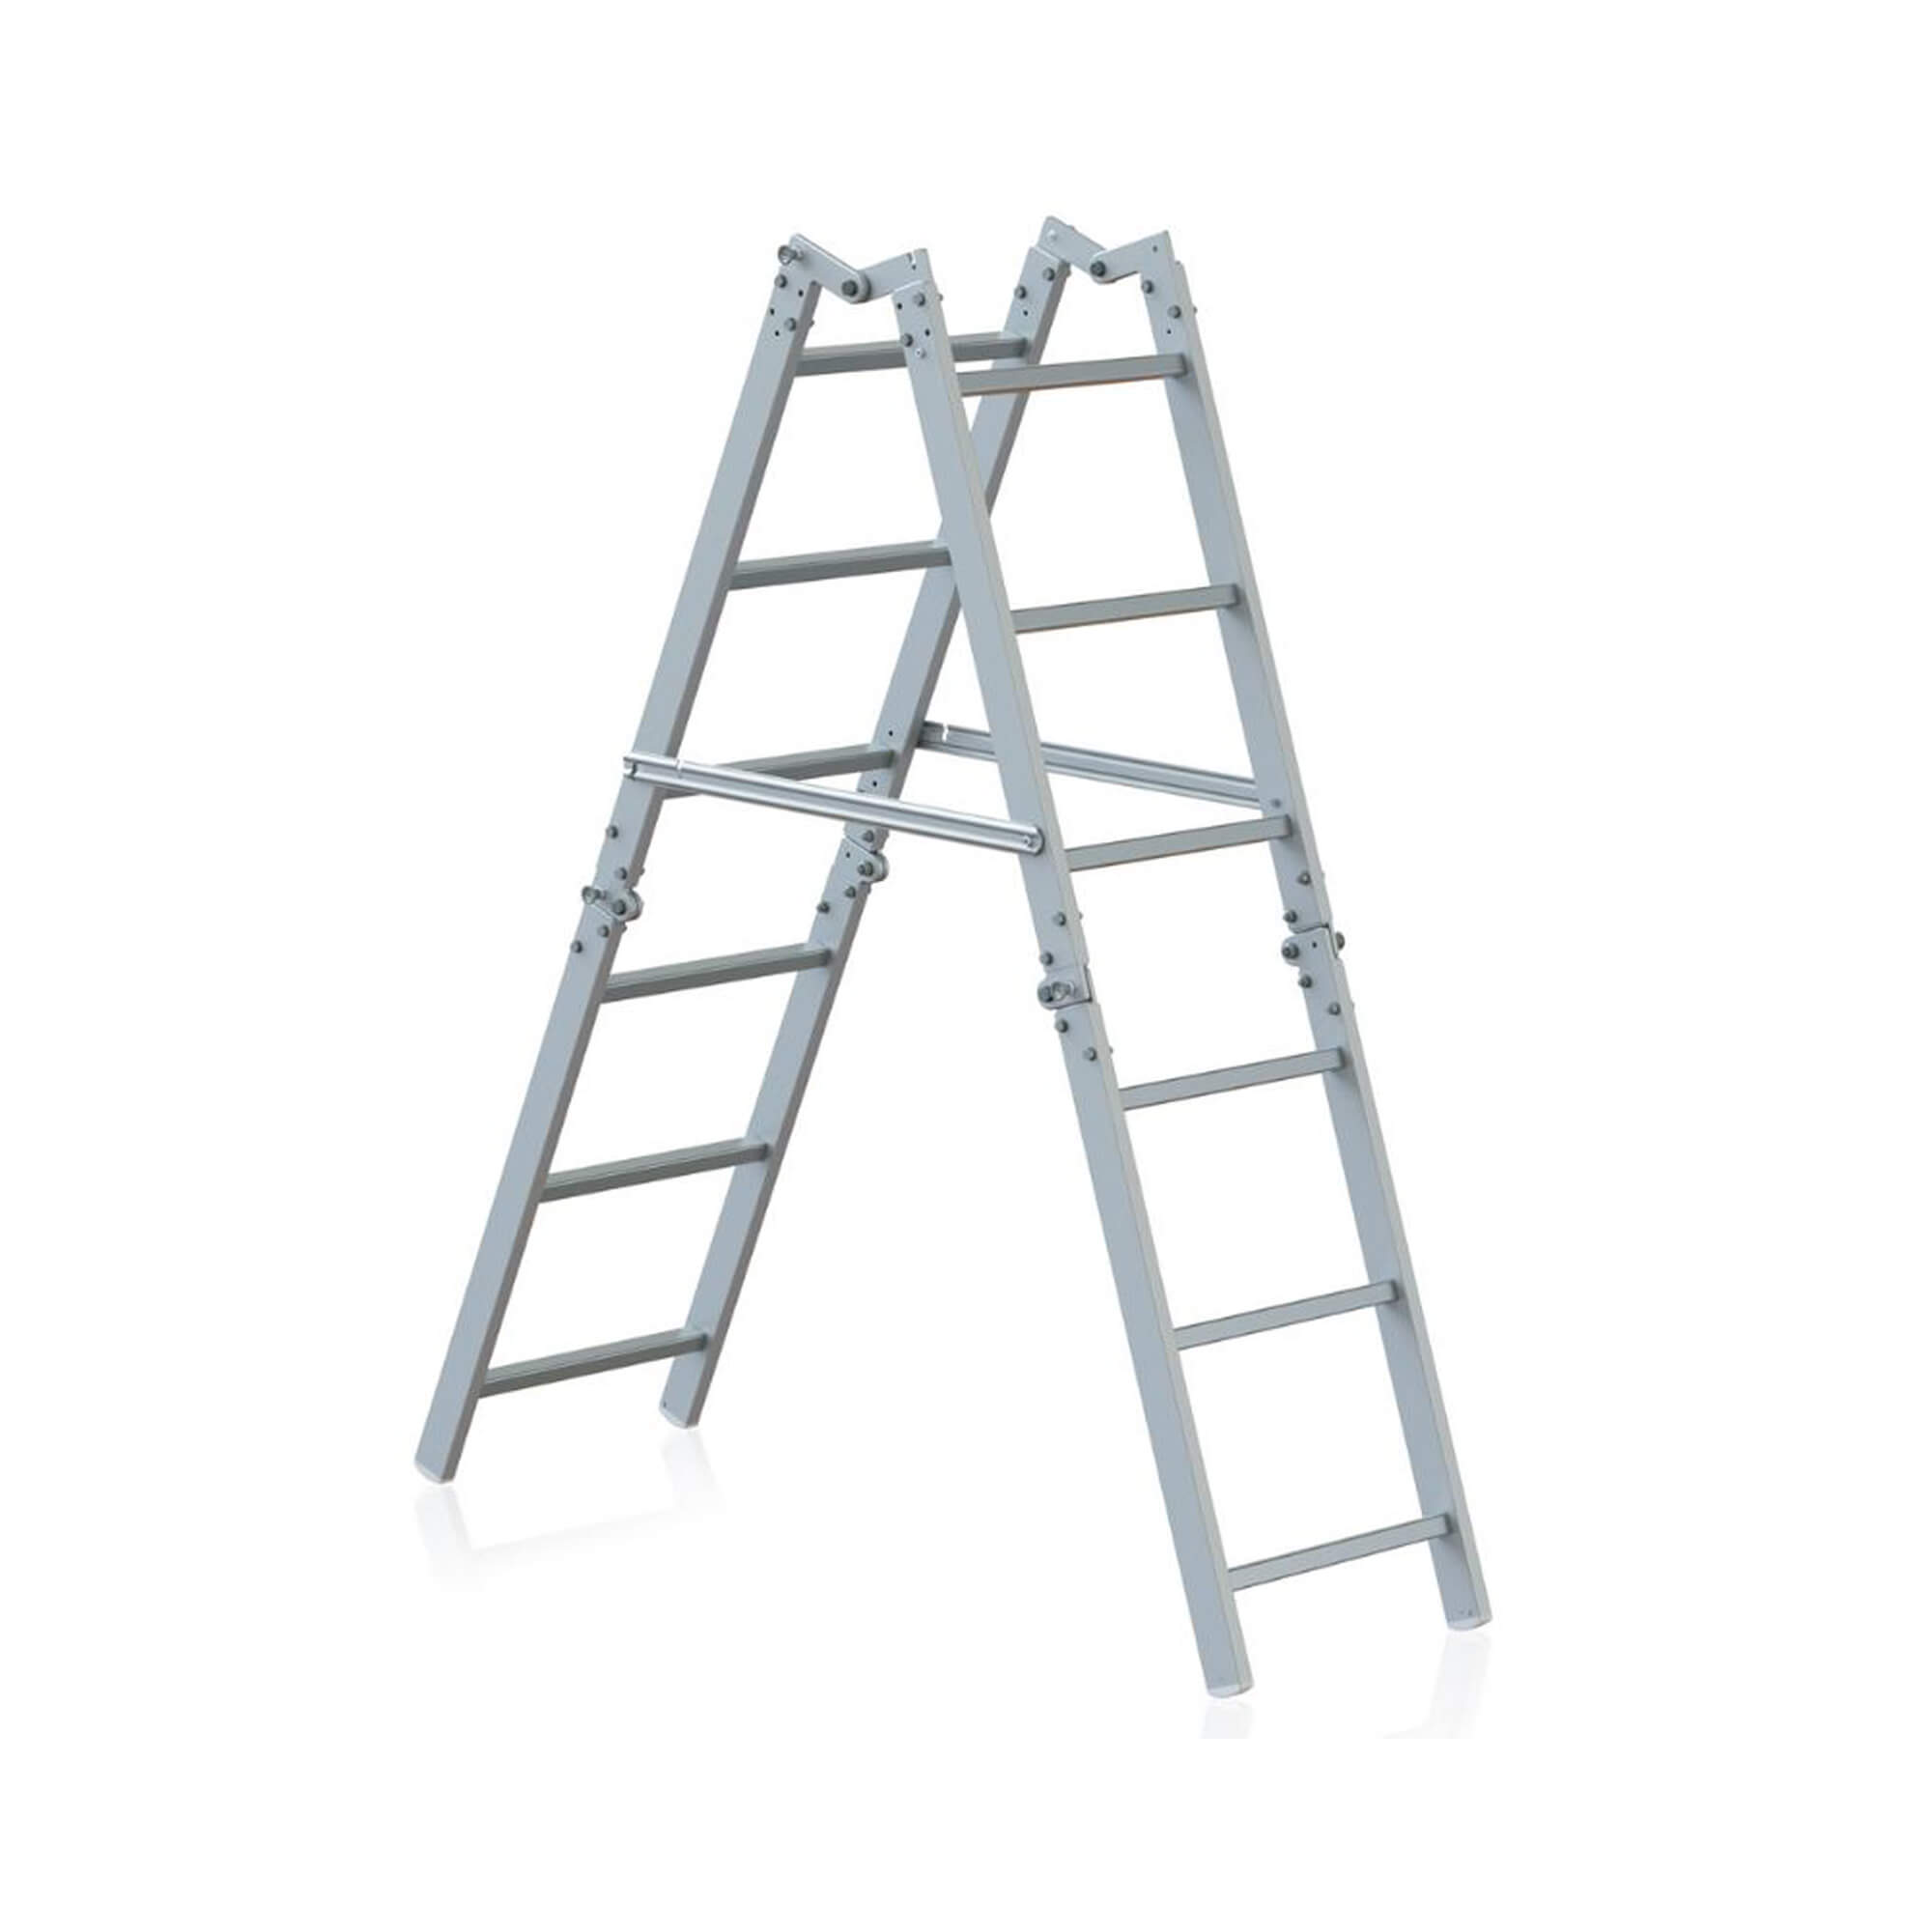 Aluminium foldable ladders